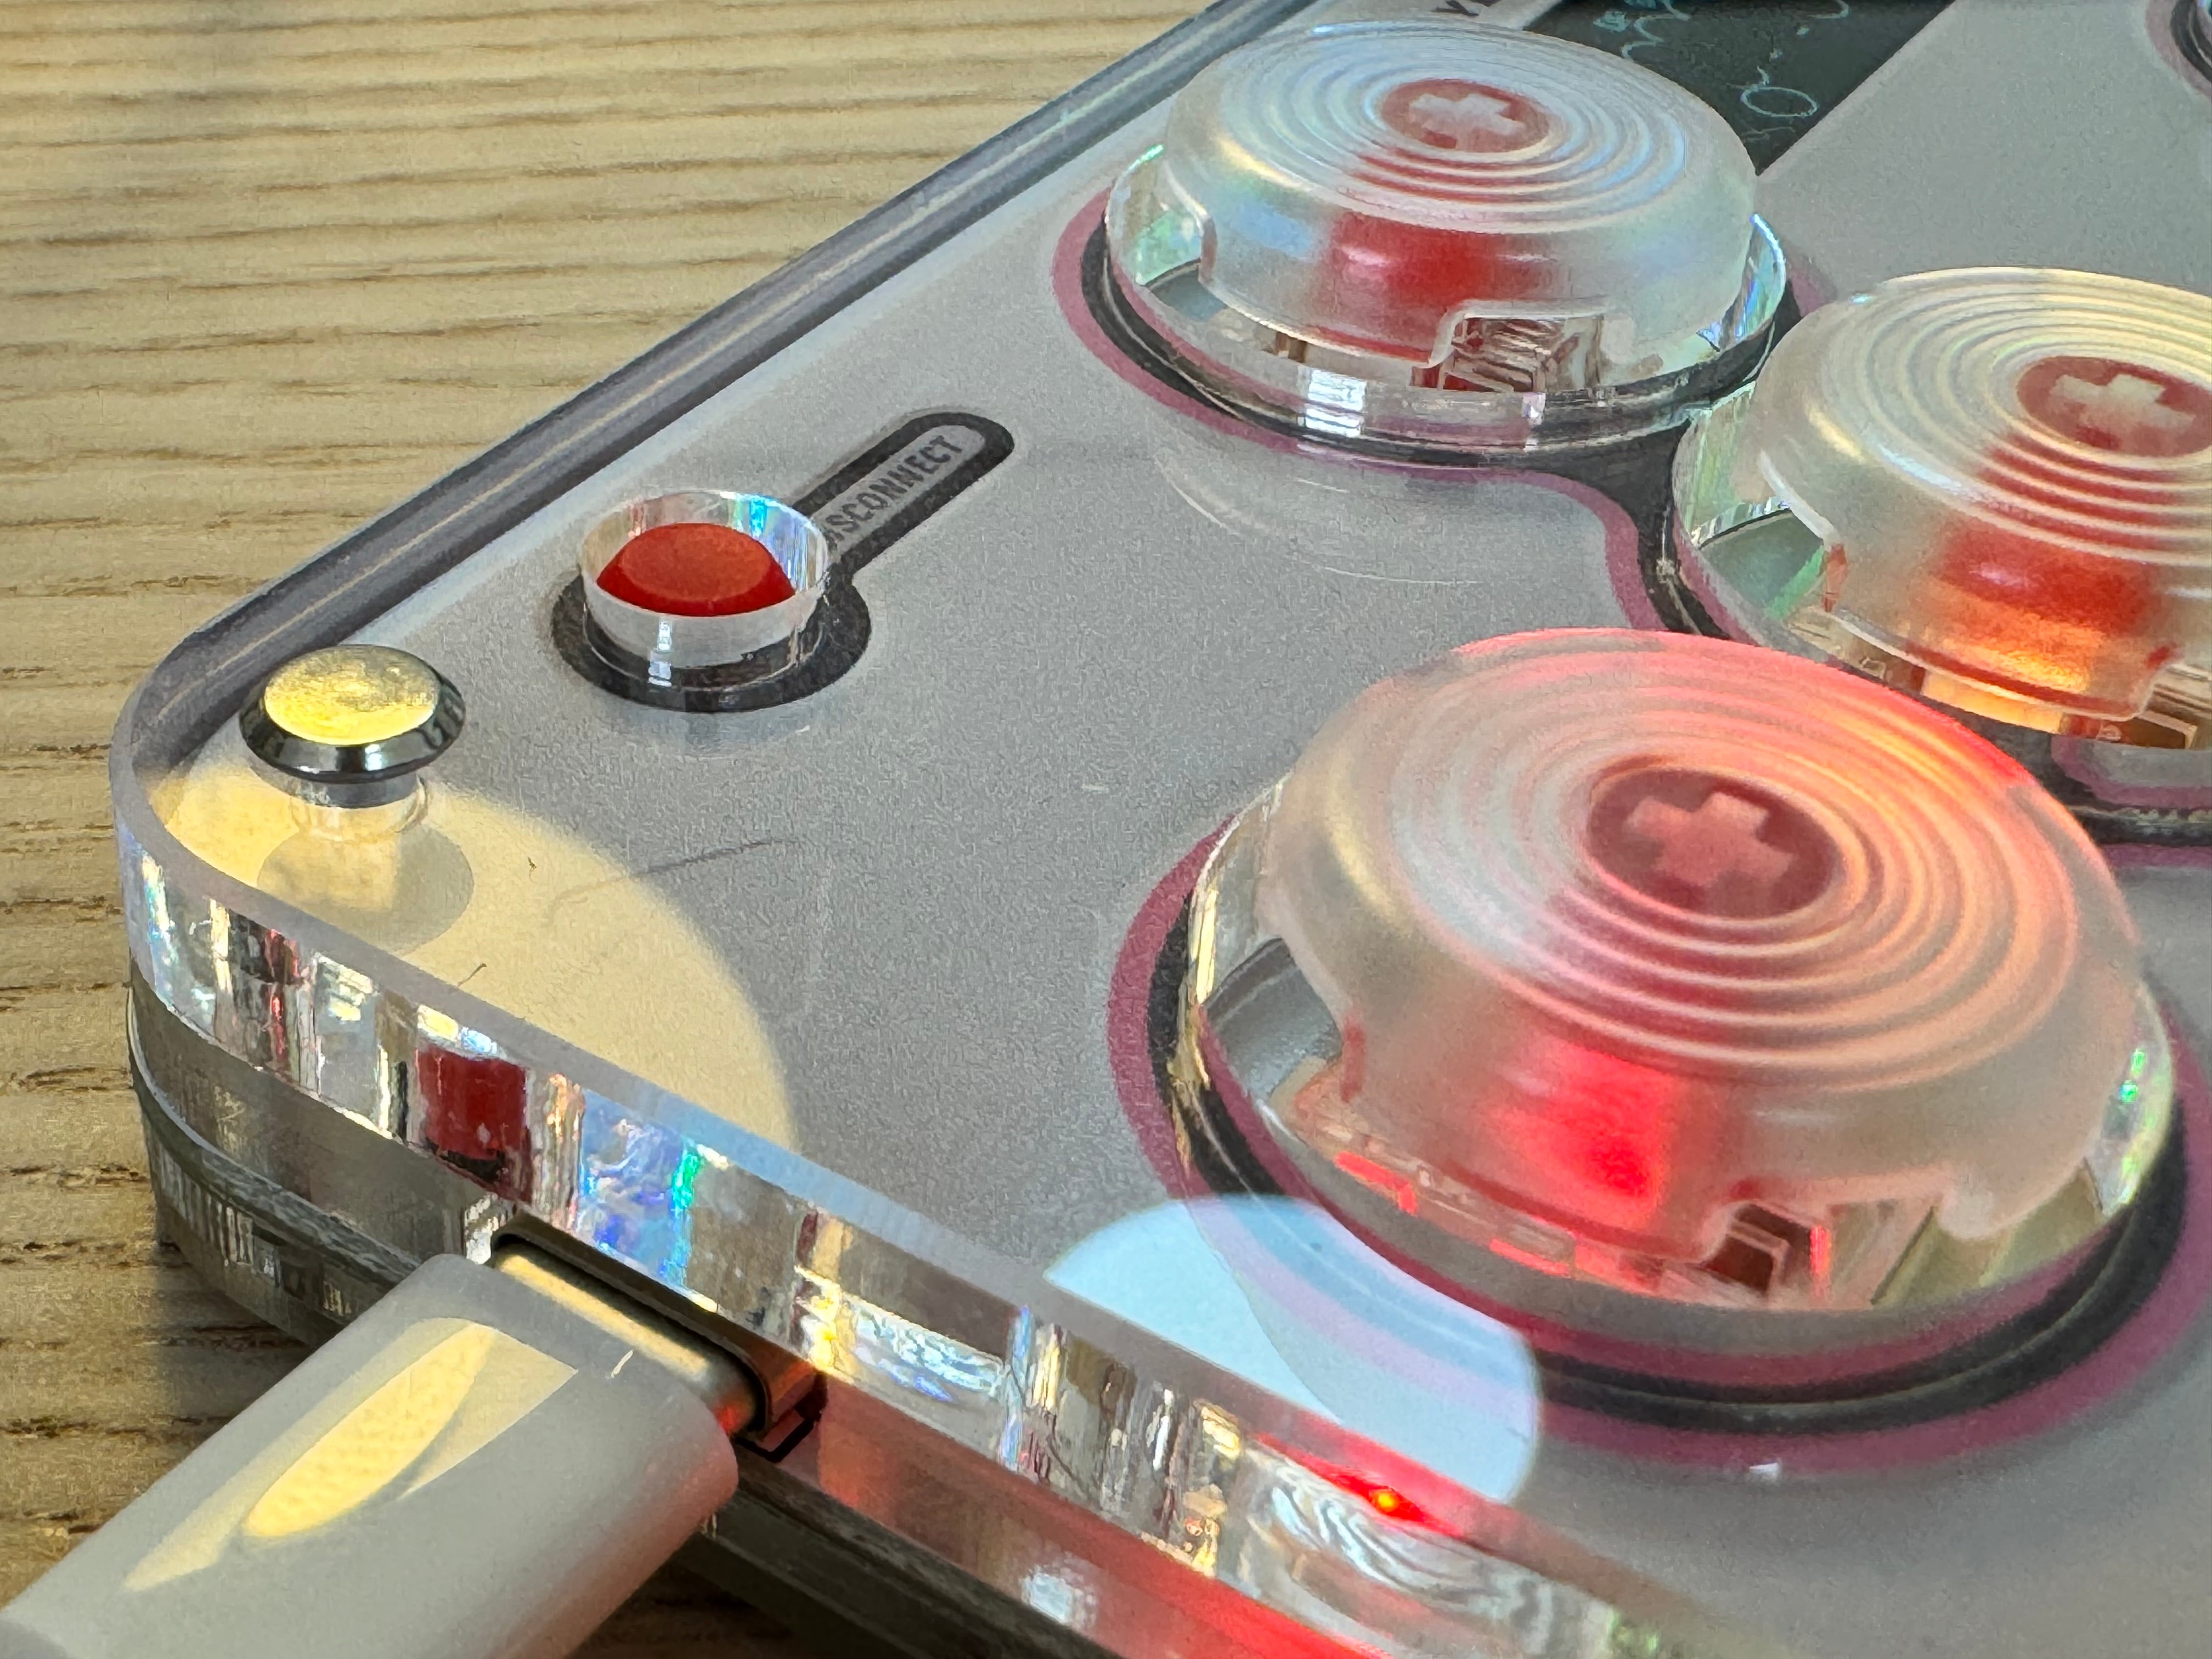 1月上旬予約】SallyBox Plusボタン増設レバーレスコントローラー